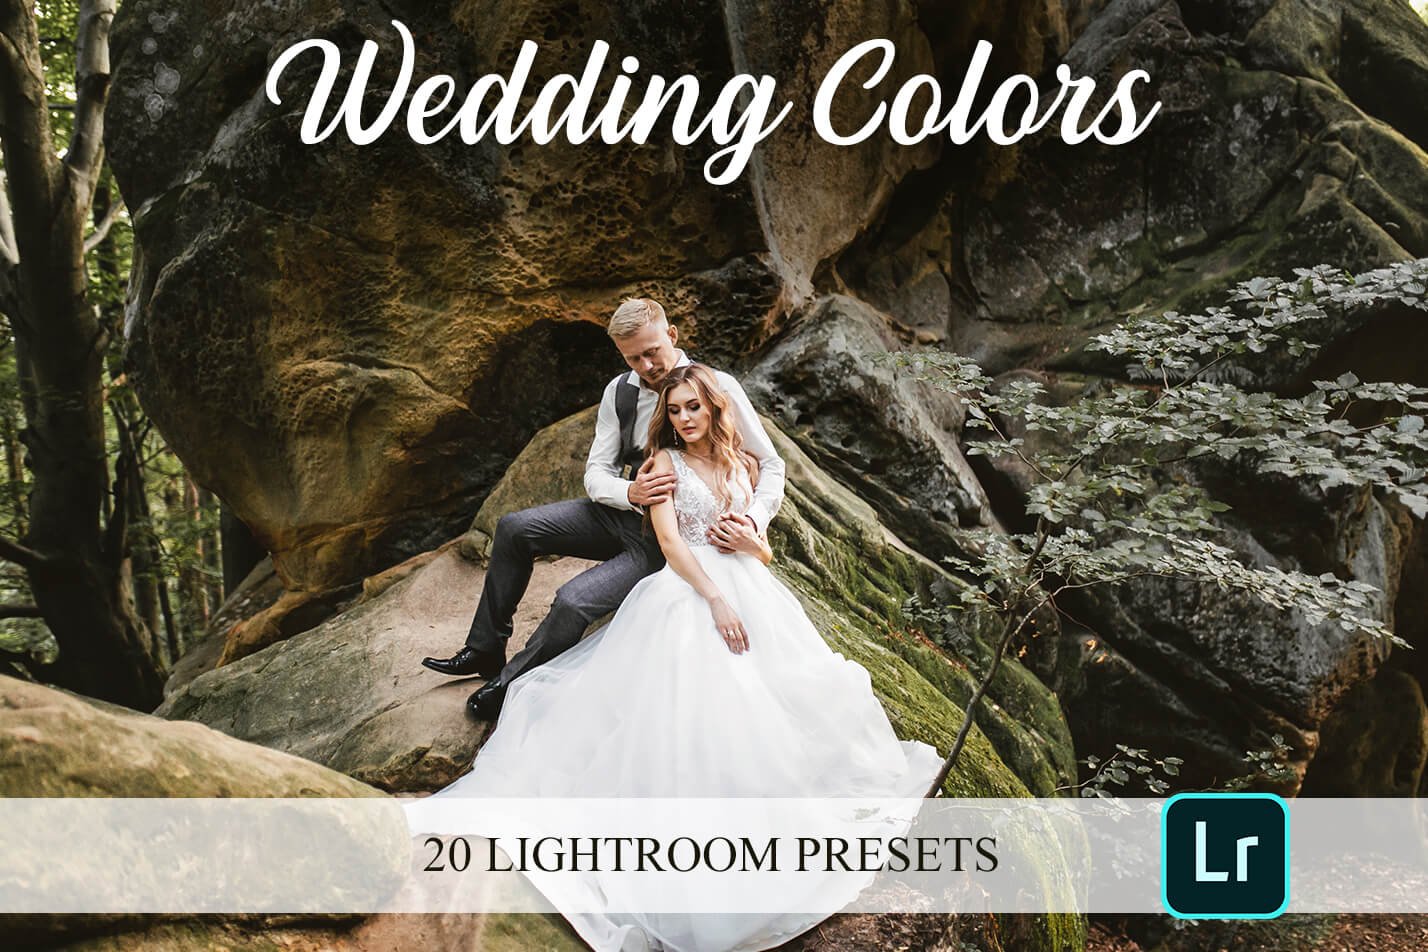 Lightroom Presets - Wedding Colorscover image.